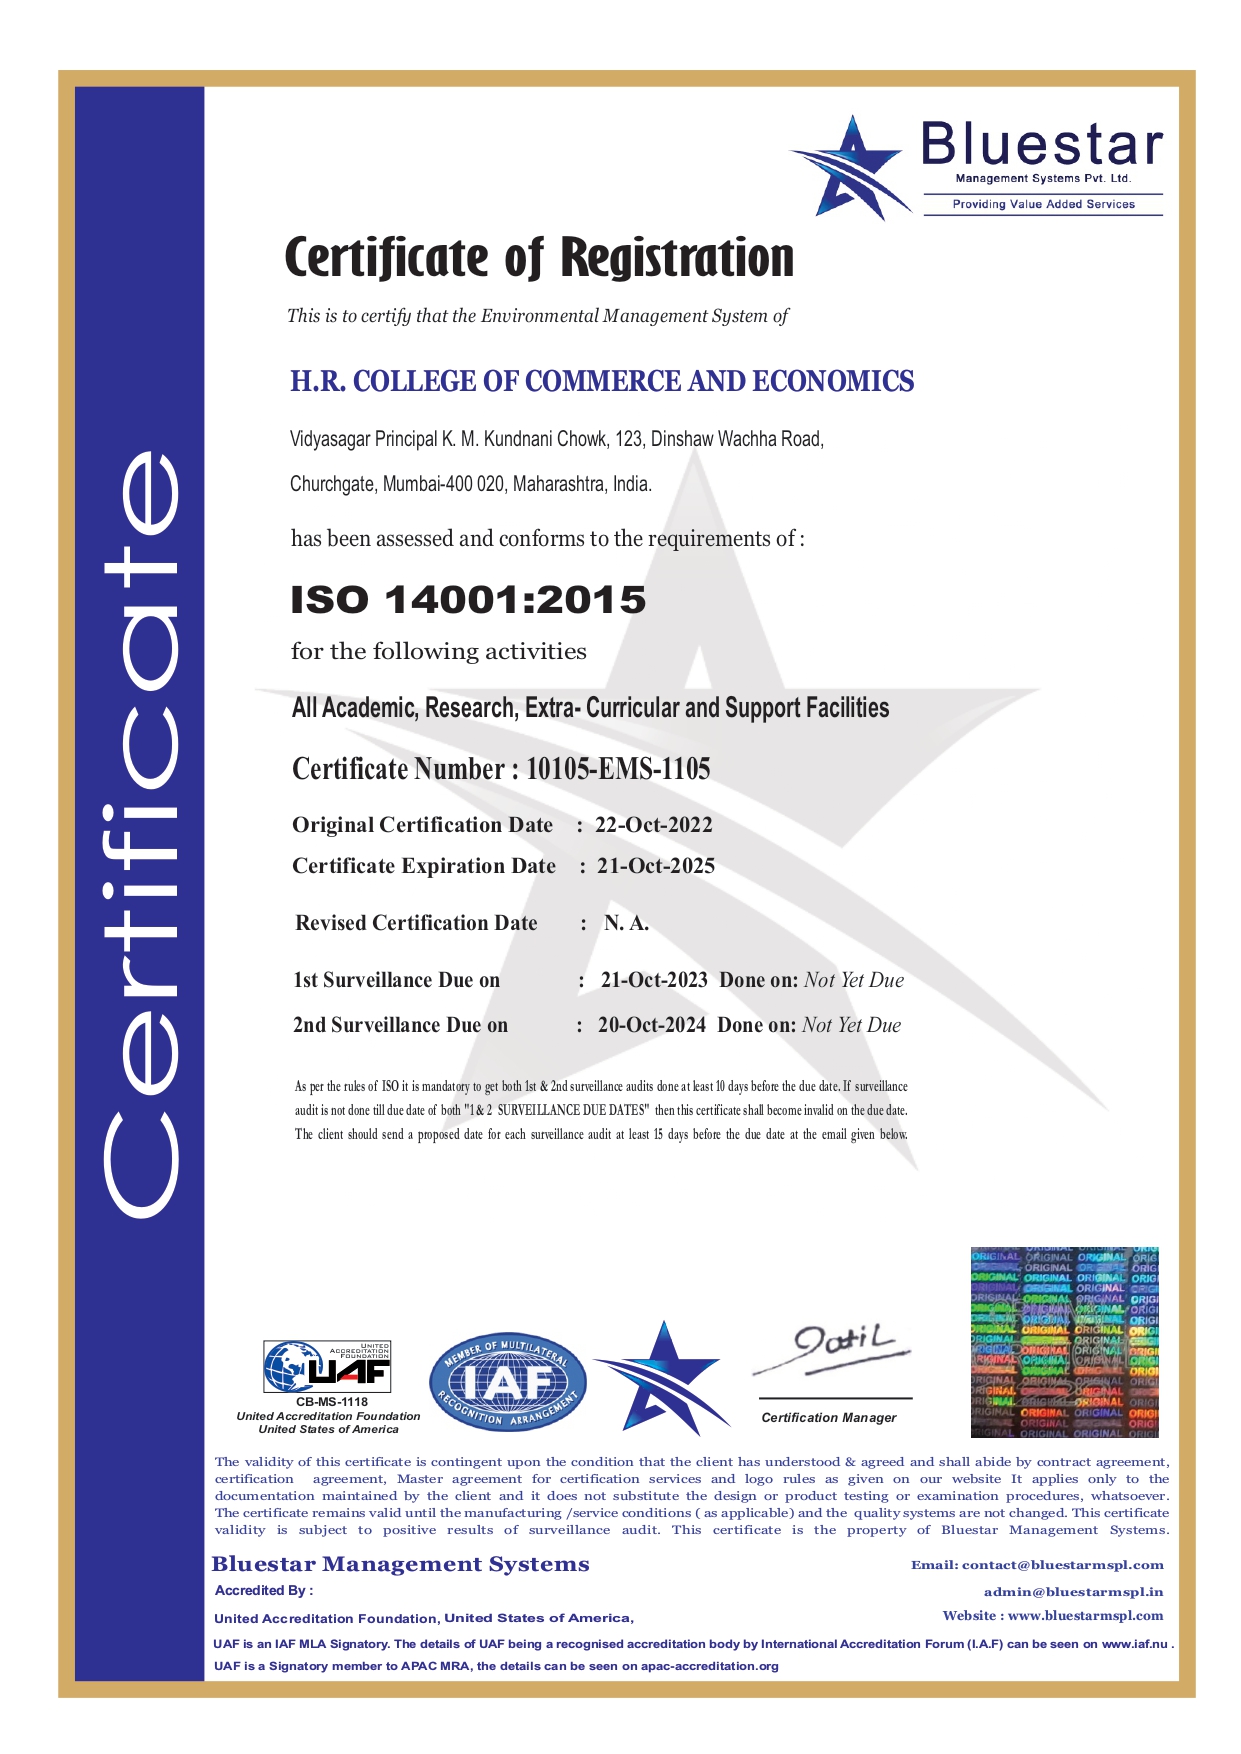 Green Audit certified by Bluestar - ISO 14001-2015